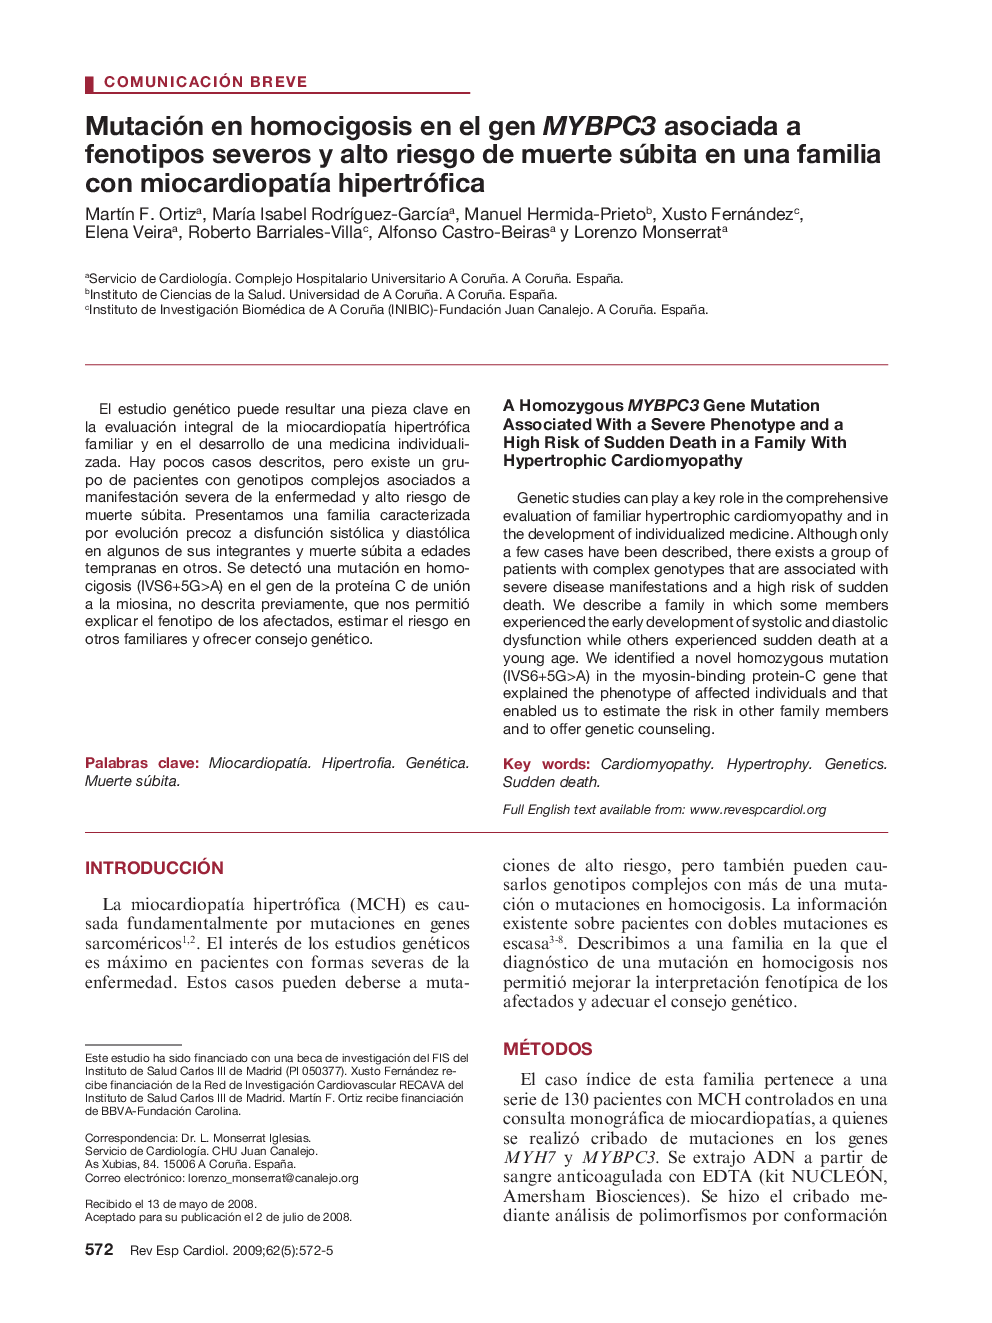 Mutación en homocigosis en el gen MYBPC3 asociada a fenotipos severos y alto riesgo de muerte súbita en una familia con miocardiopatÃ­a hipertrófica